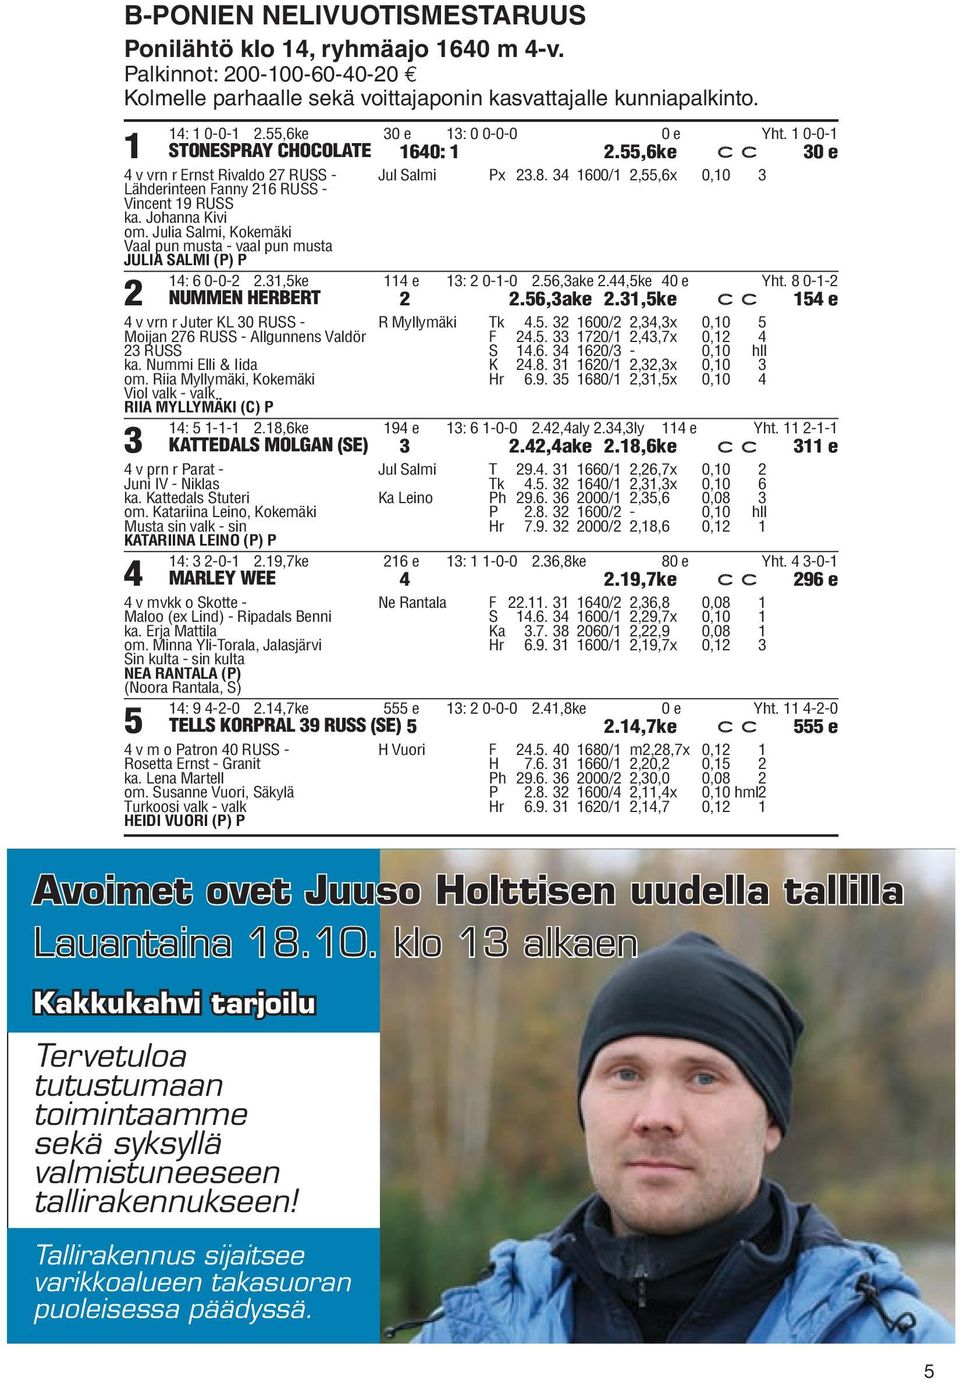 Julia Salmi, Kokemäki Vaal pun musta - vaal pun musta JULIA SALMI (P) P Jul Salmi Px.8. 600/,55,6x 0,0 : 6 0-0-.,5ke e : 0--0.56,ake.